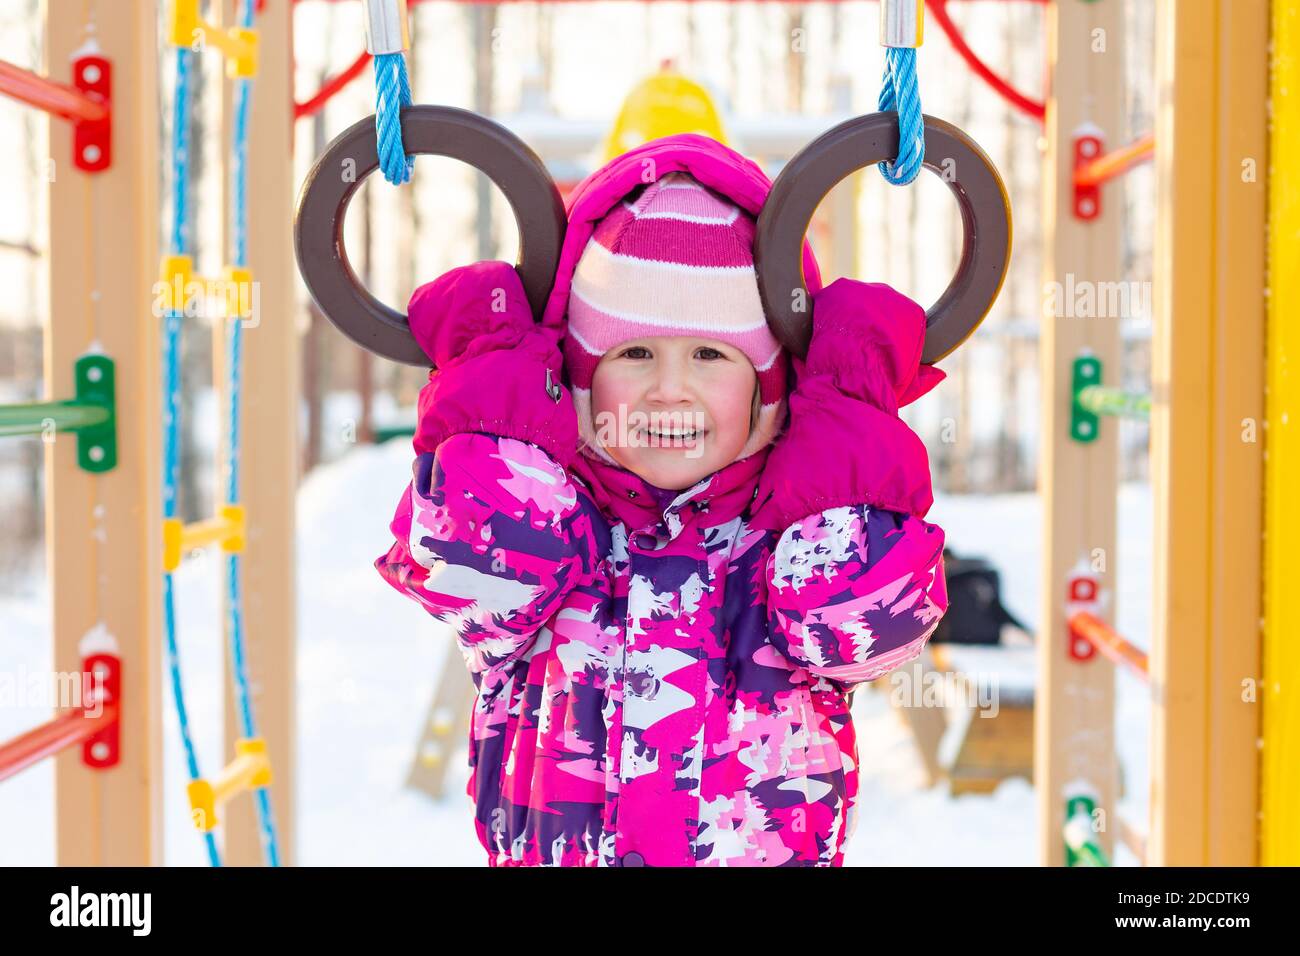 Un bambino caucasico allegro con guance rude in abiti invernali si trova sul parco giochi, guarda la macchina fotografica. Ritratto a mezza lunghezza di una bambina in inverno Foto Stock